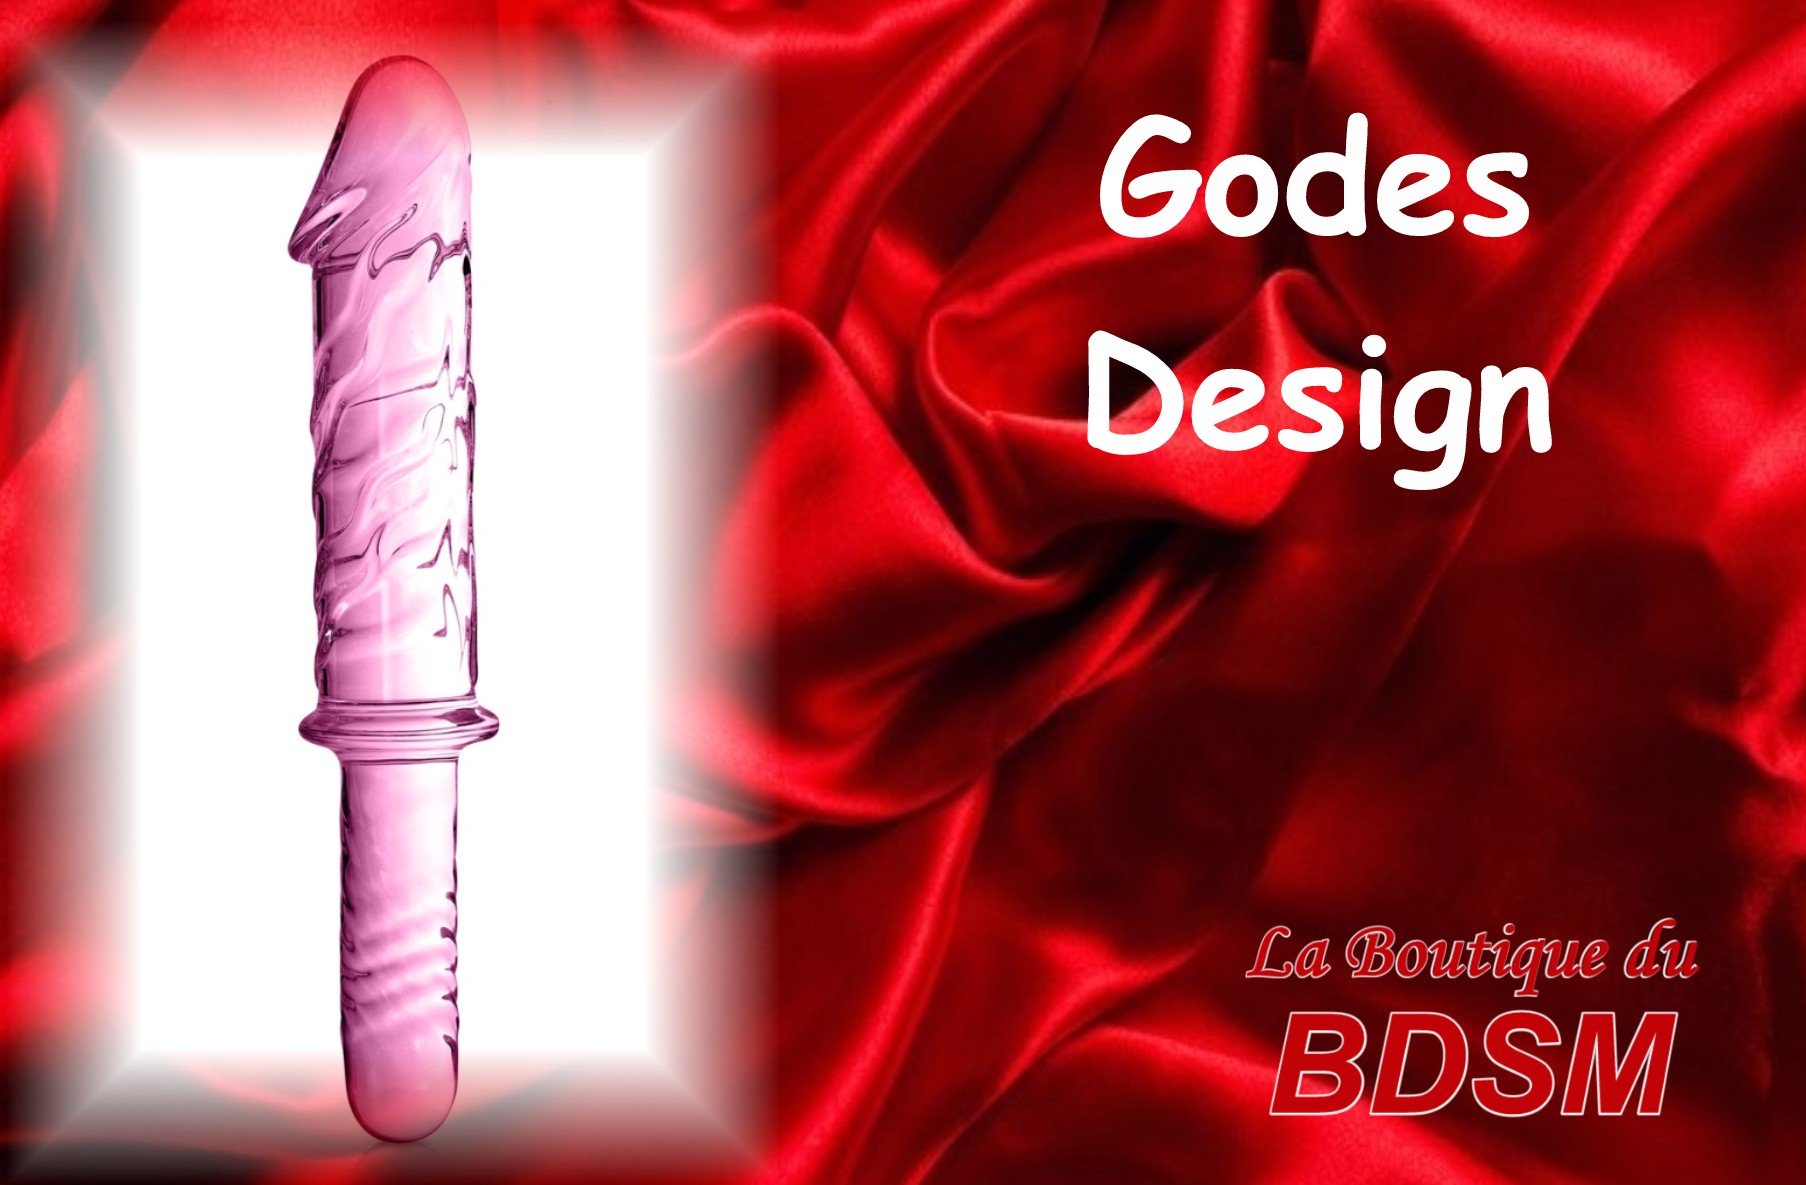 GODES DESIGN - LA BOUTIQUE DU BDSM